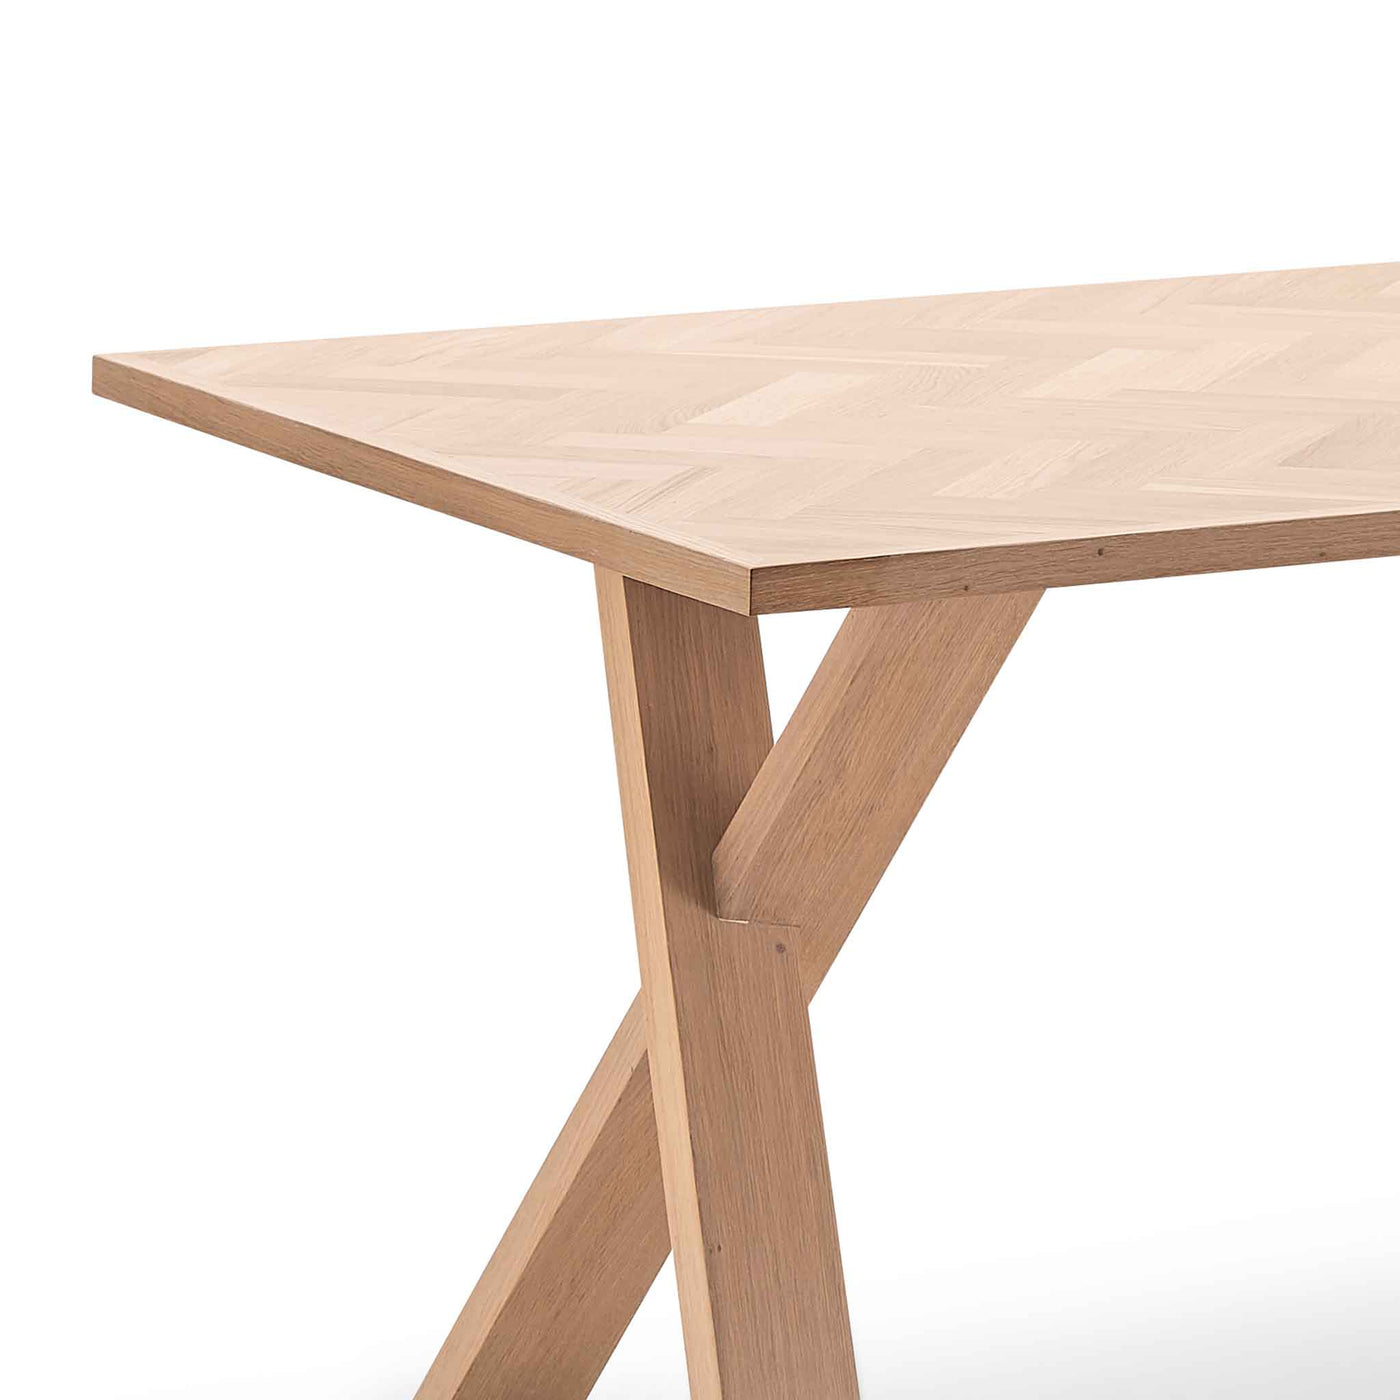 Parquette spisebord med sildebensmønster 100x220cm i hvidolieret eg fra Kristensen & Kristensen